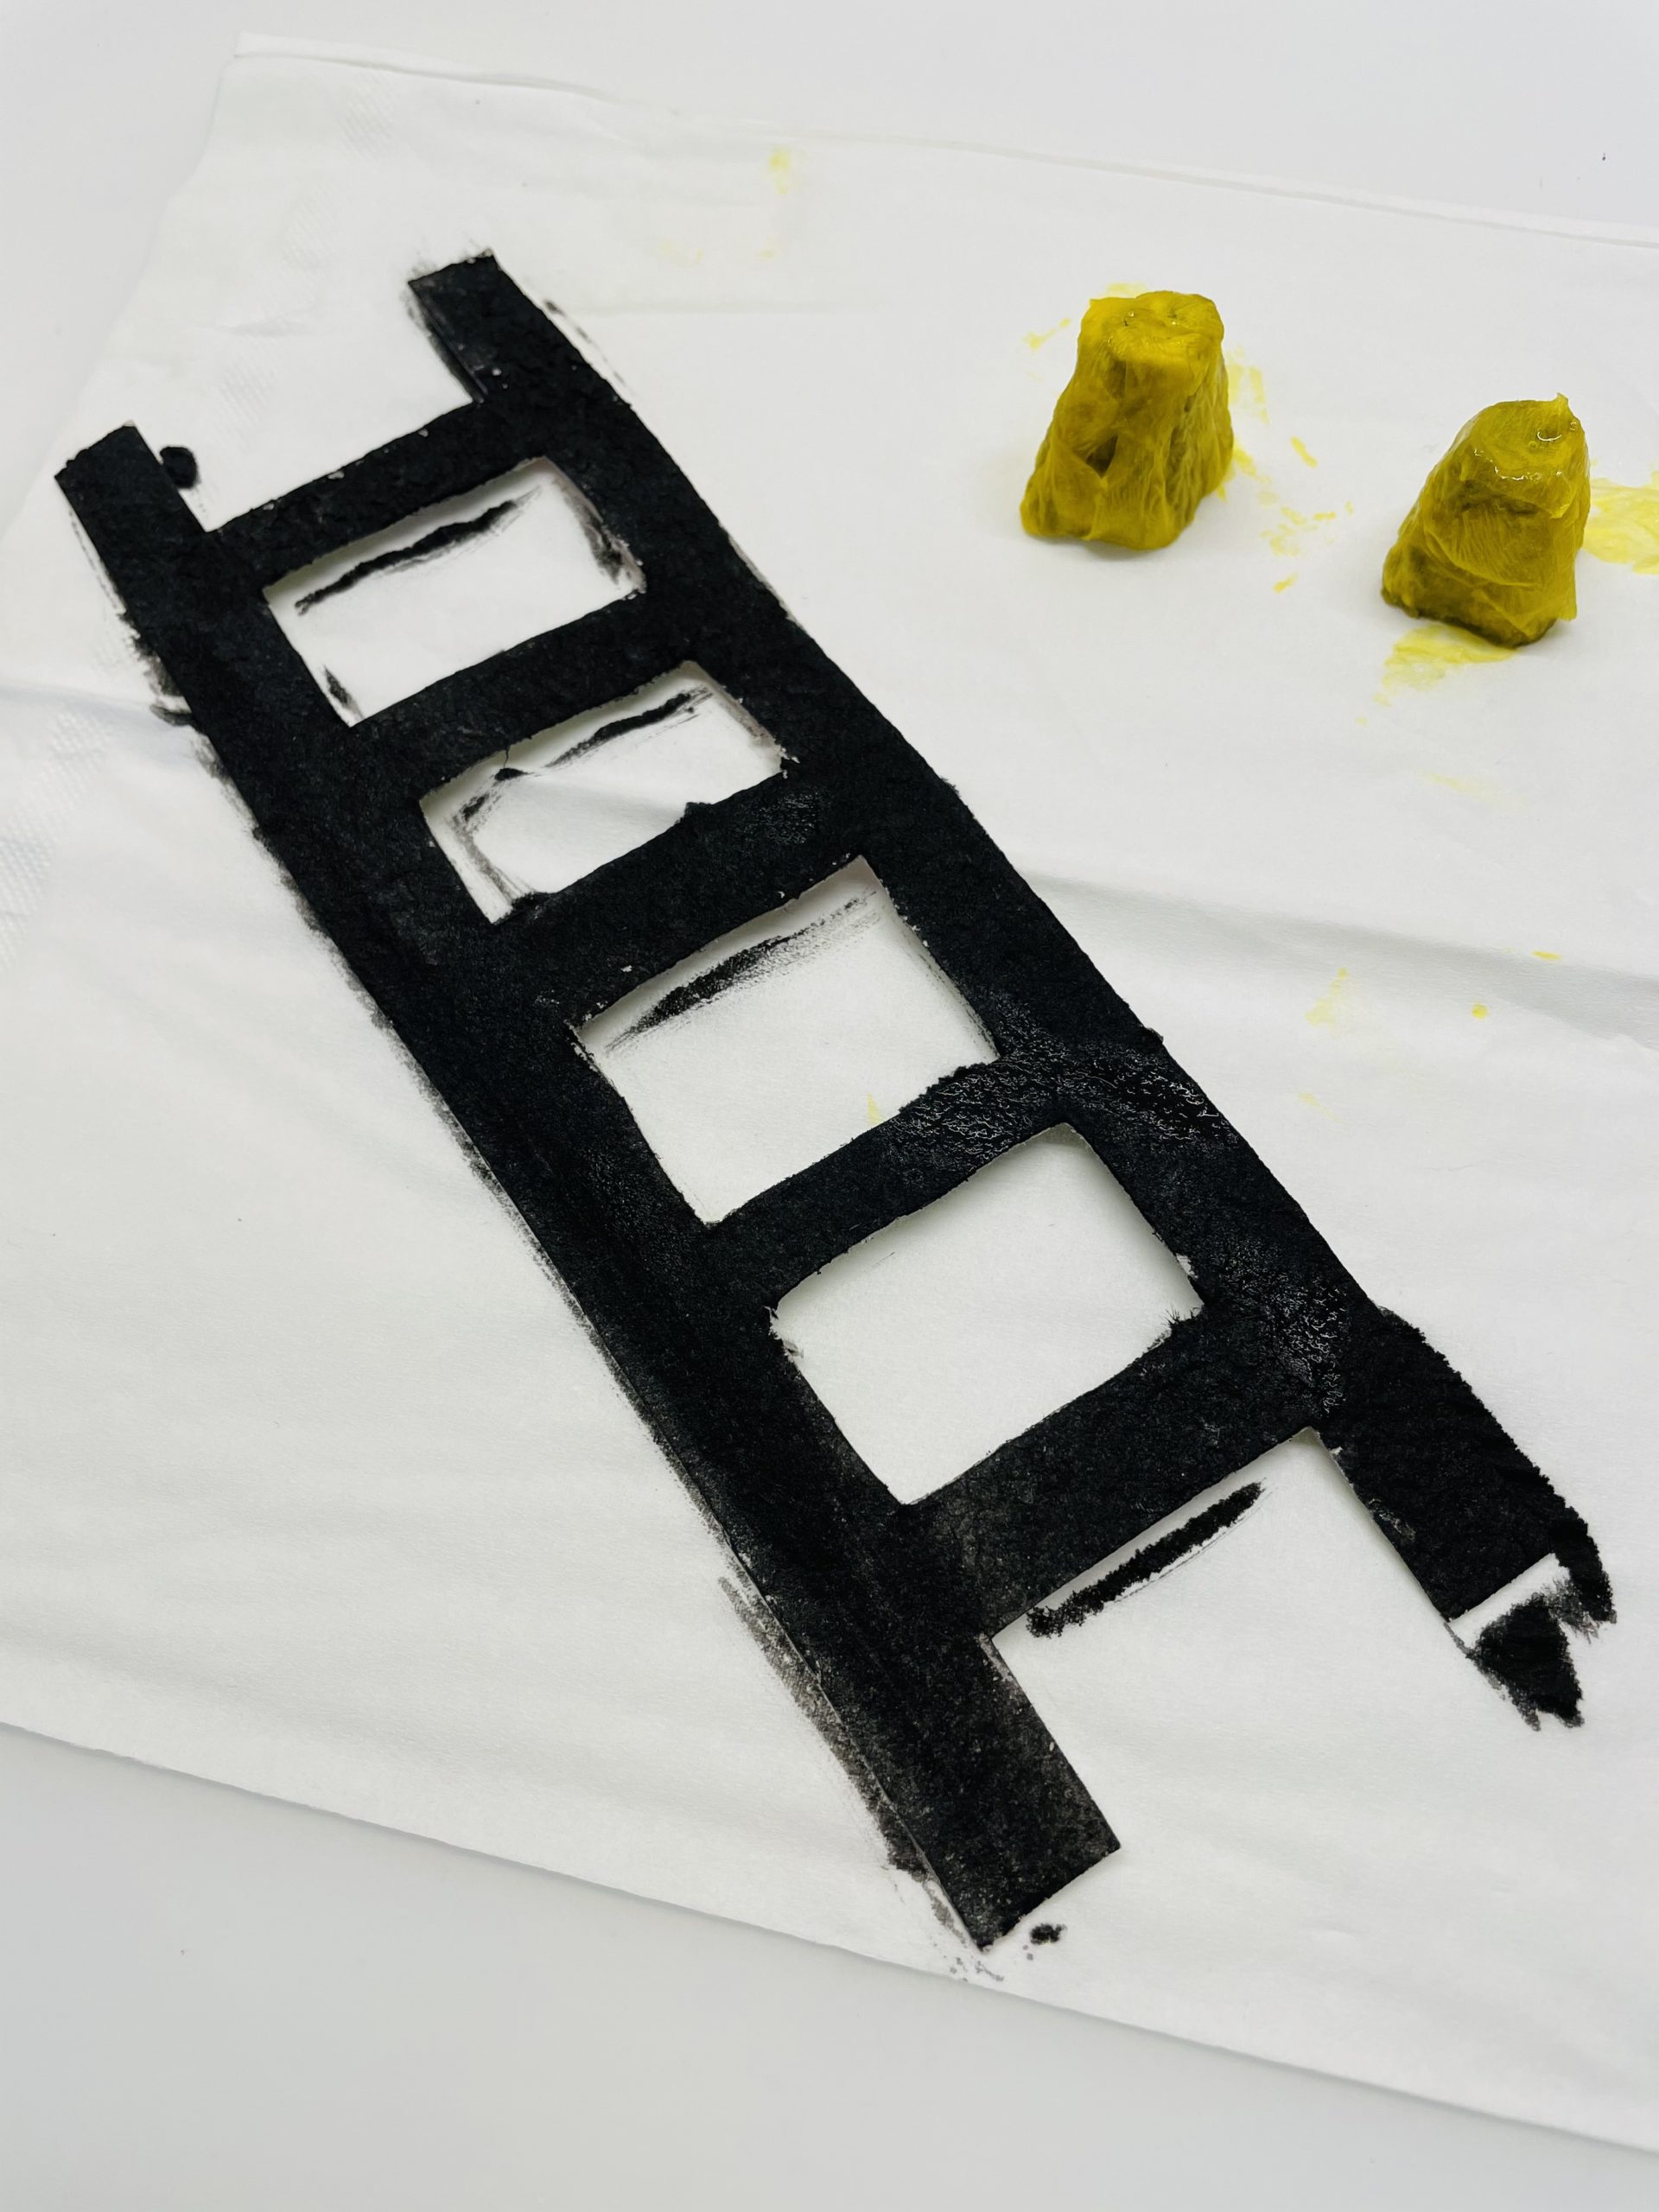 Bild zum Schritt 17 für das Bastel- und DIY-Abenteuer für Kinder: 'Die Leiter ist somit von beiden Seiten schwarz bemalt.'